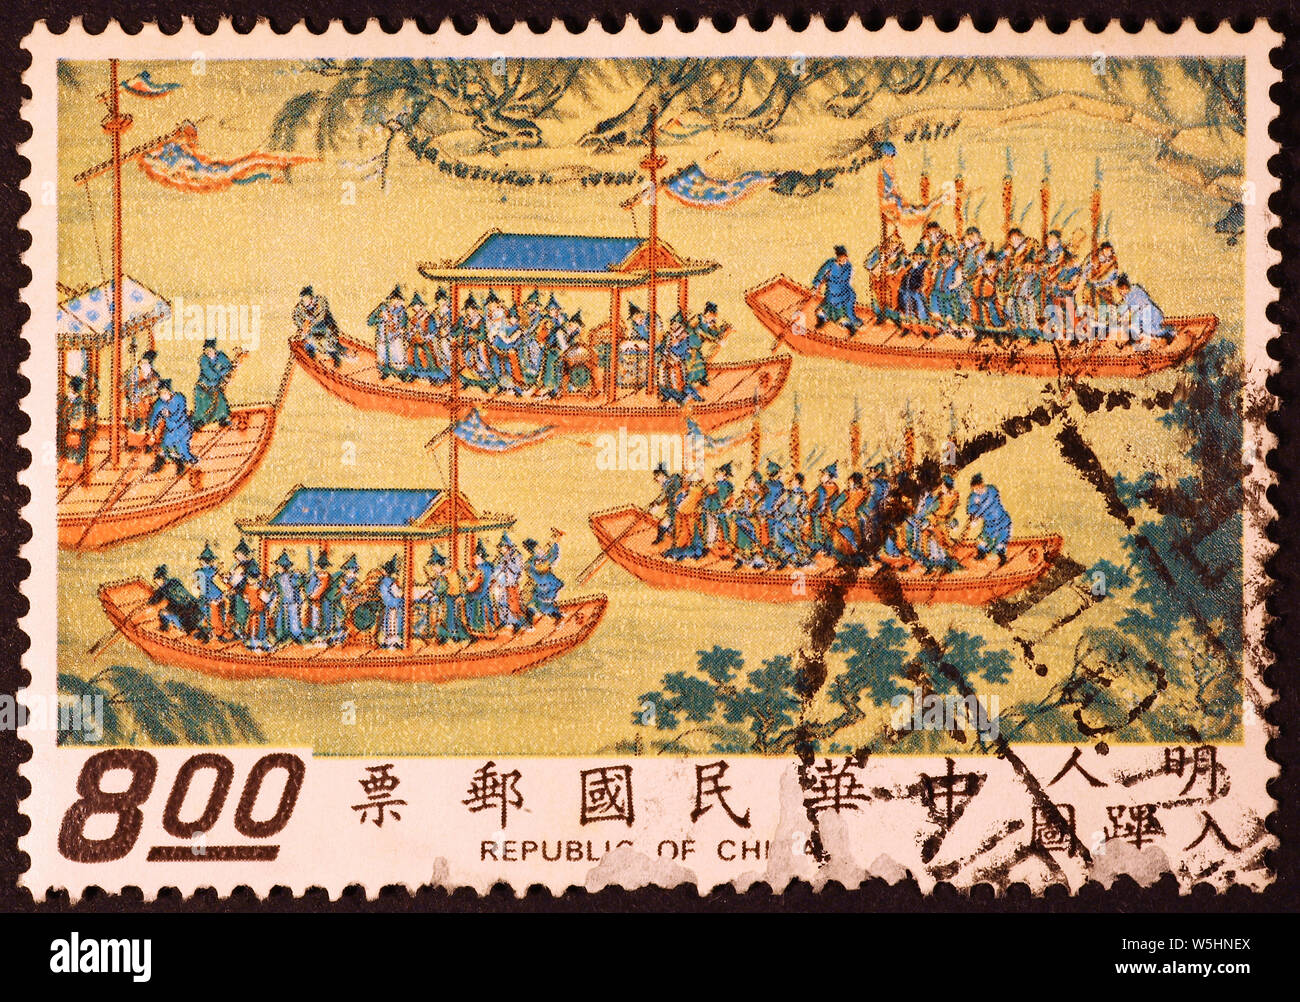 La peinture chinoise ancienne avec des embarcations traditionnelles sur timbre-poste Banque D'Images